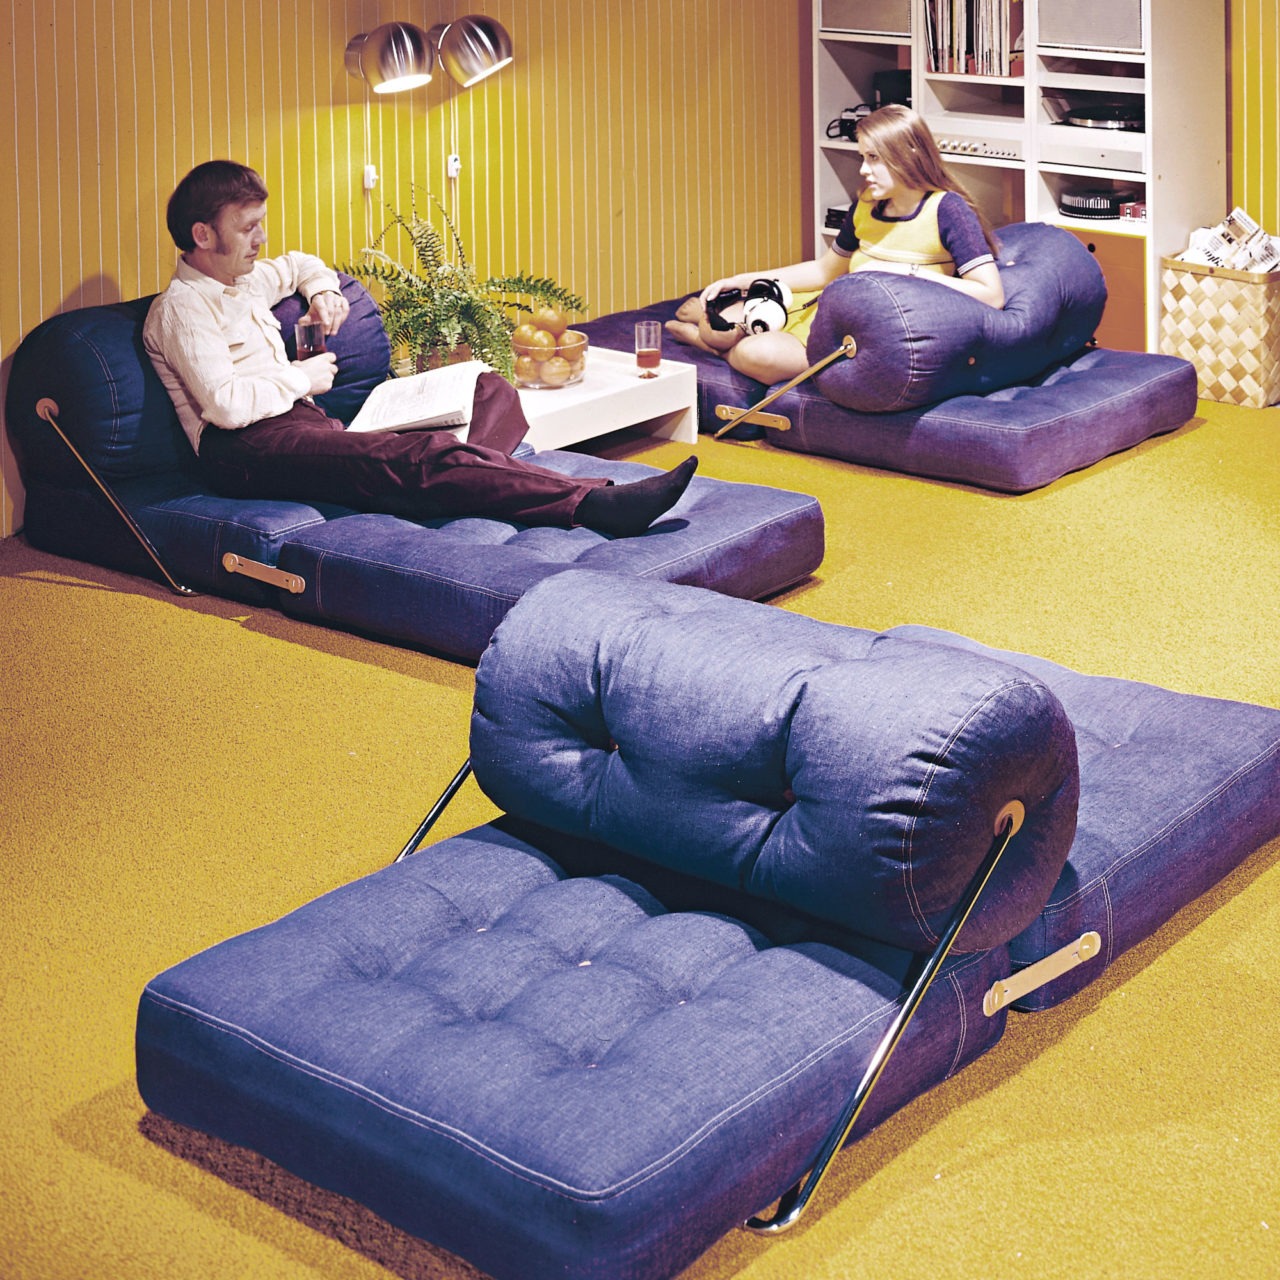 Cojines TAJT con funda de tela vaquera, desplegados como divanes por el suelo de una habitación con moqueta amarilla.